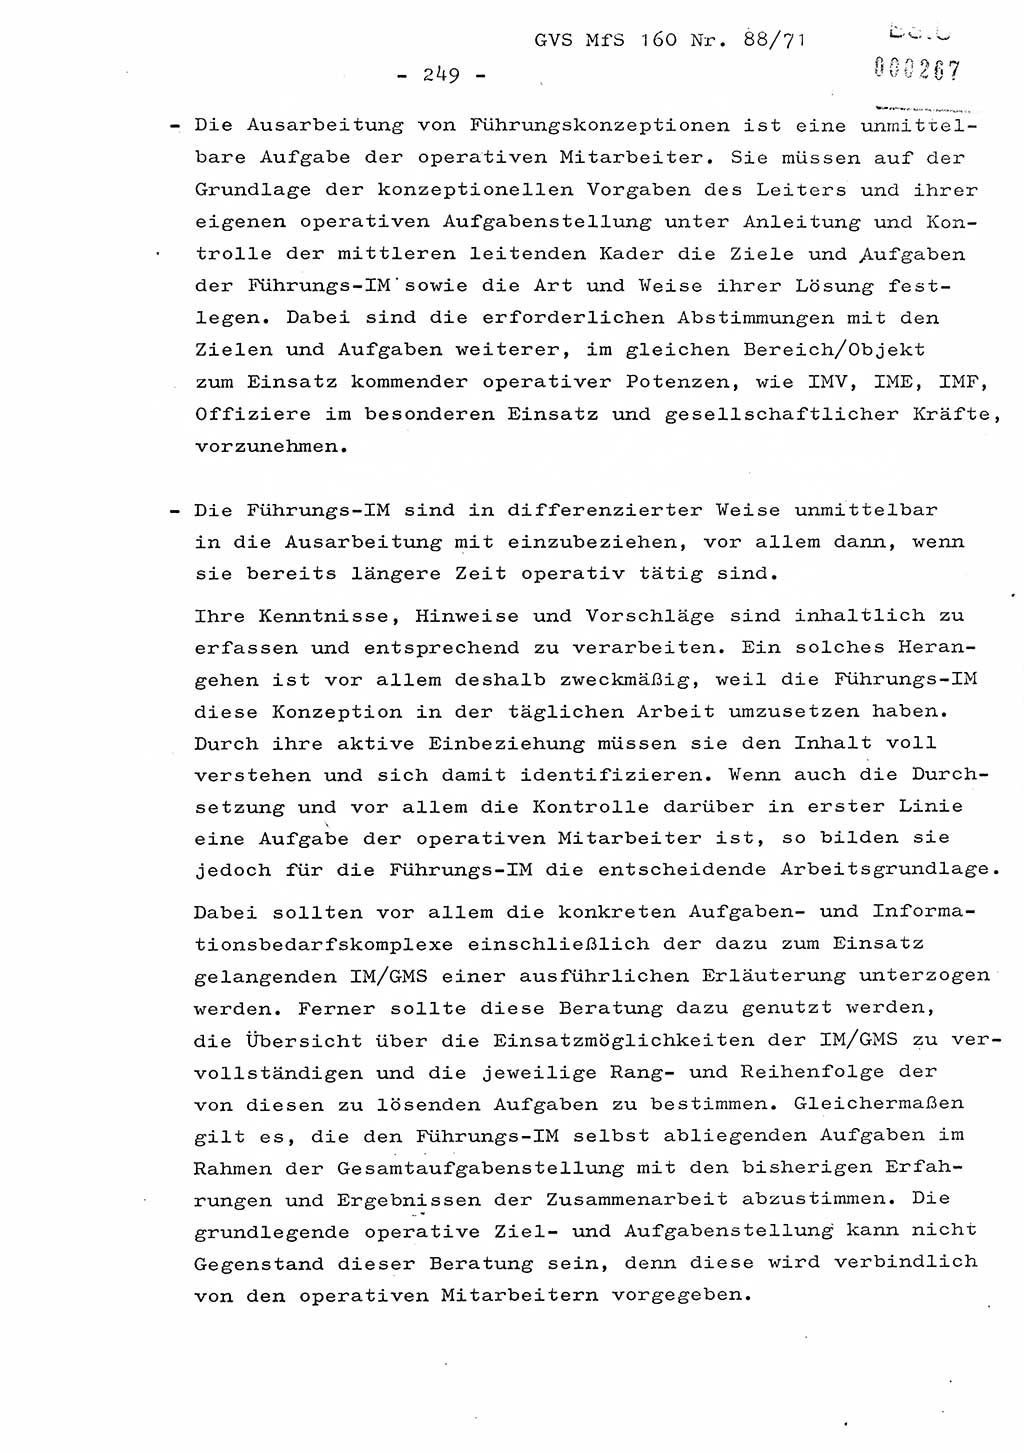 Dissertation Oberstleutnant Josef Schwarz (BV Schwerin), Major Fritz Amm (JHS), Hauptmann Peter Gräßler (JHS), Ministerium für Staatssicherheit (MfS) [Deutsche Demokratische Republik (DDR)], Juristische Hochschule (JHS), Geheime Verschlußsache (GVS) 160-88/71, Potsdam 1972, Seite 249 (Diss. MfS DDR JHS GVS 160-88/71 1972, S. 249)